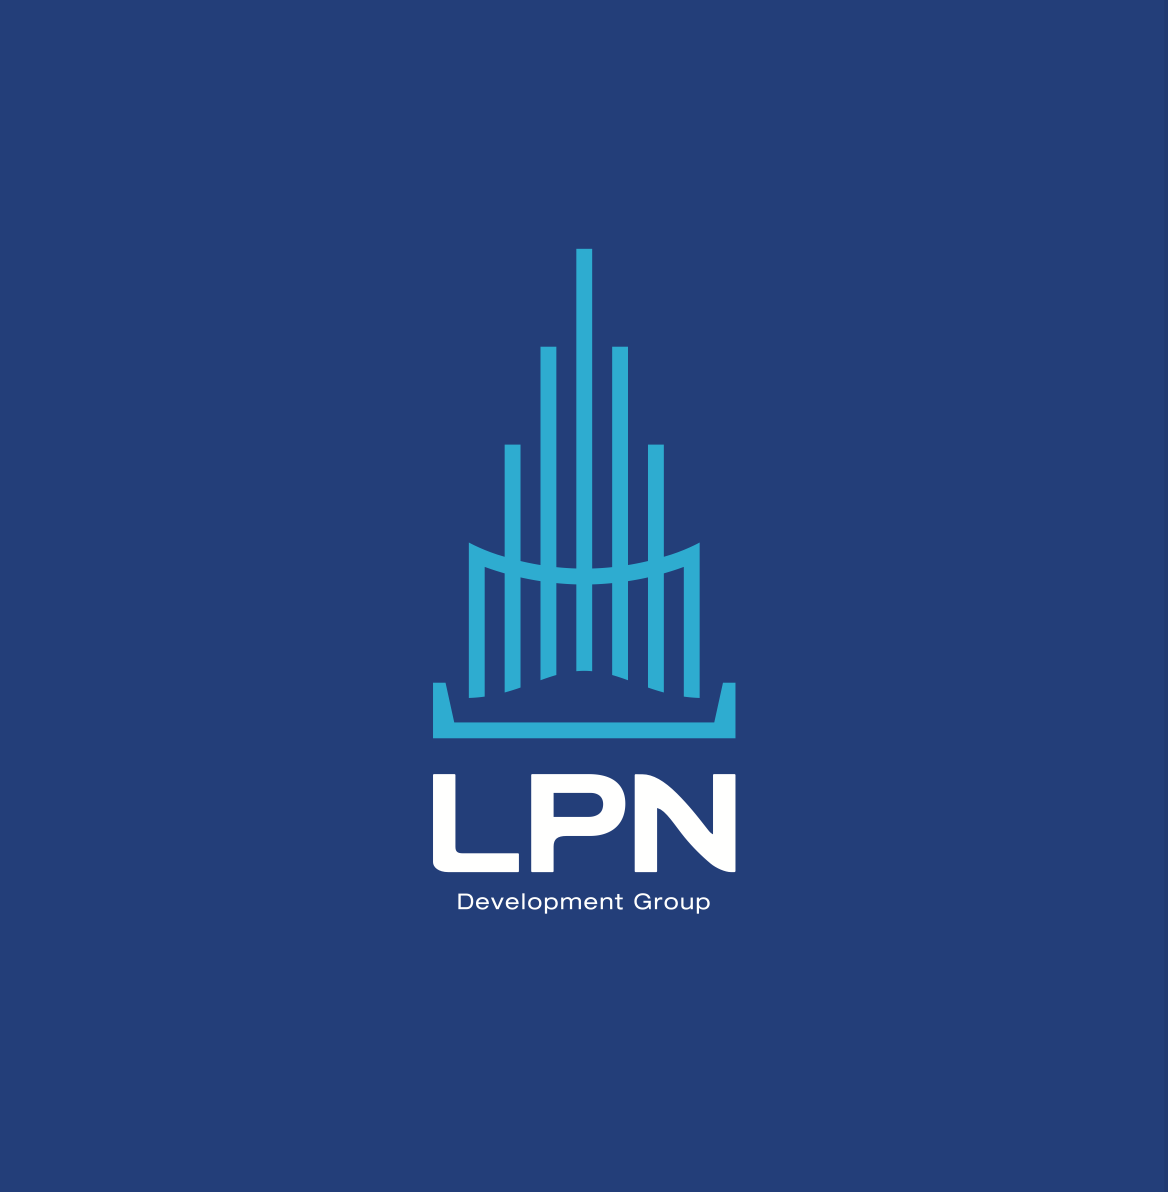 “LPN” ก้าวสู่การเปลี่ยนแปลงครั้งใหญ่ เดินหน้าขับเคลื่อนองค์กรปี 66 ภายใต้แนวคิด “Transform for Better Linving” เติบโตอย่างแข็งแกร่งและยั่งยืนในทุกมิติ